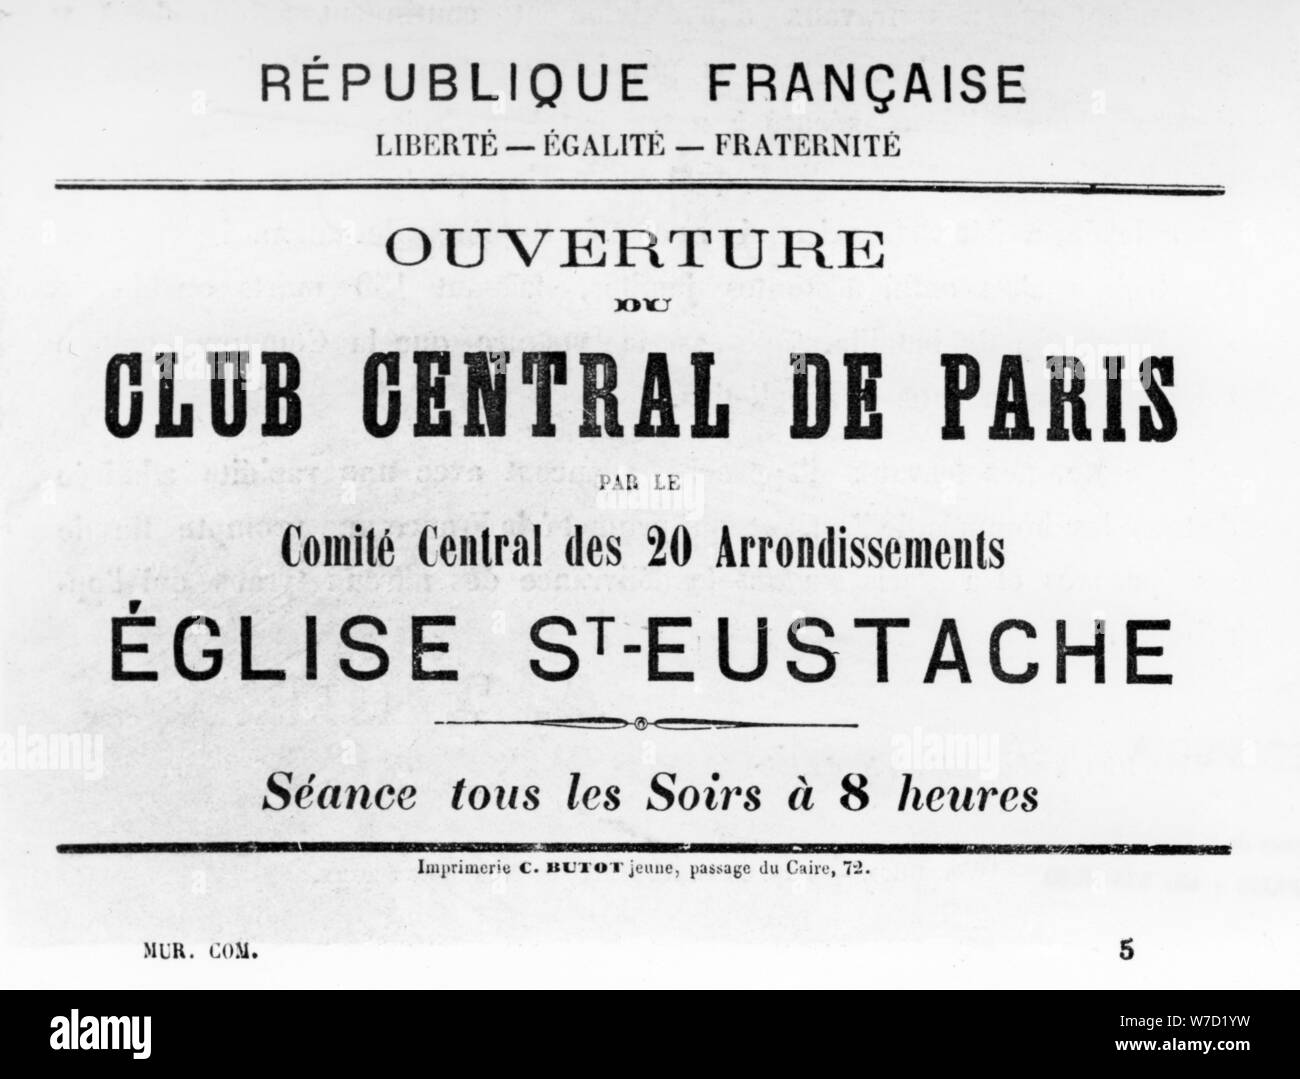 Club Central de Paris, à partir d'affiches politiques français de la Commune de Paris, mai 1871. Artiste : Inconnu Banque D'Images